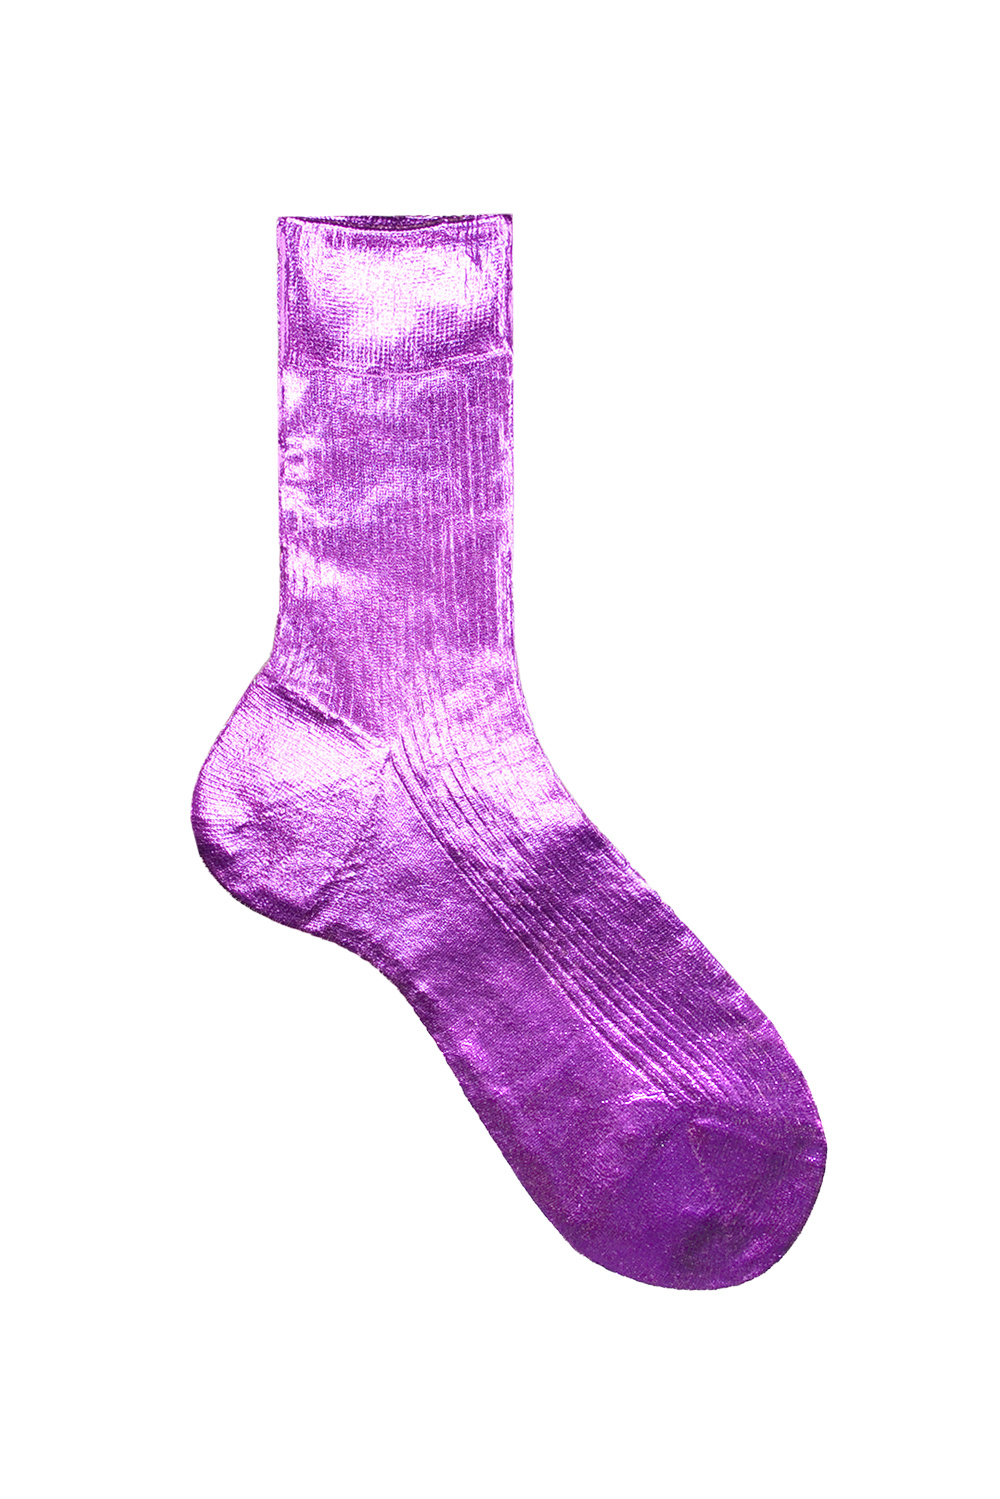 One Ribbed Laminated Socks in Fuchsia-1